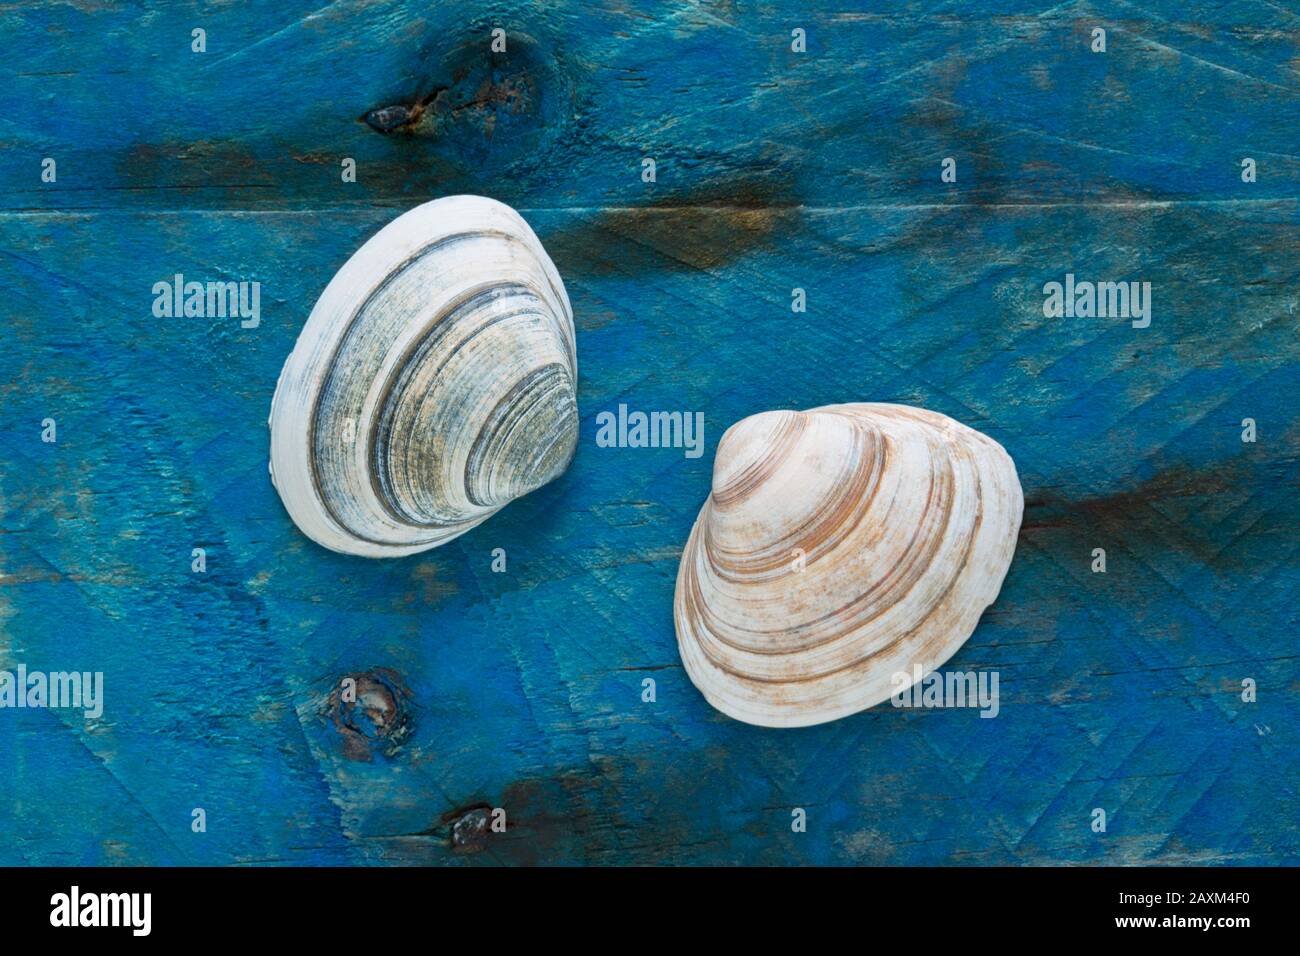 Deux obus Épais de Trough, Spisula solida, ont trouvé la plage de combater affichée sur un morceau de bois de dérive peint bleu. Dorset Angleterre Royaume-Uni GB Banque D'Images